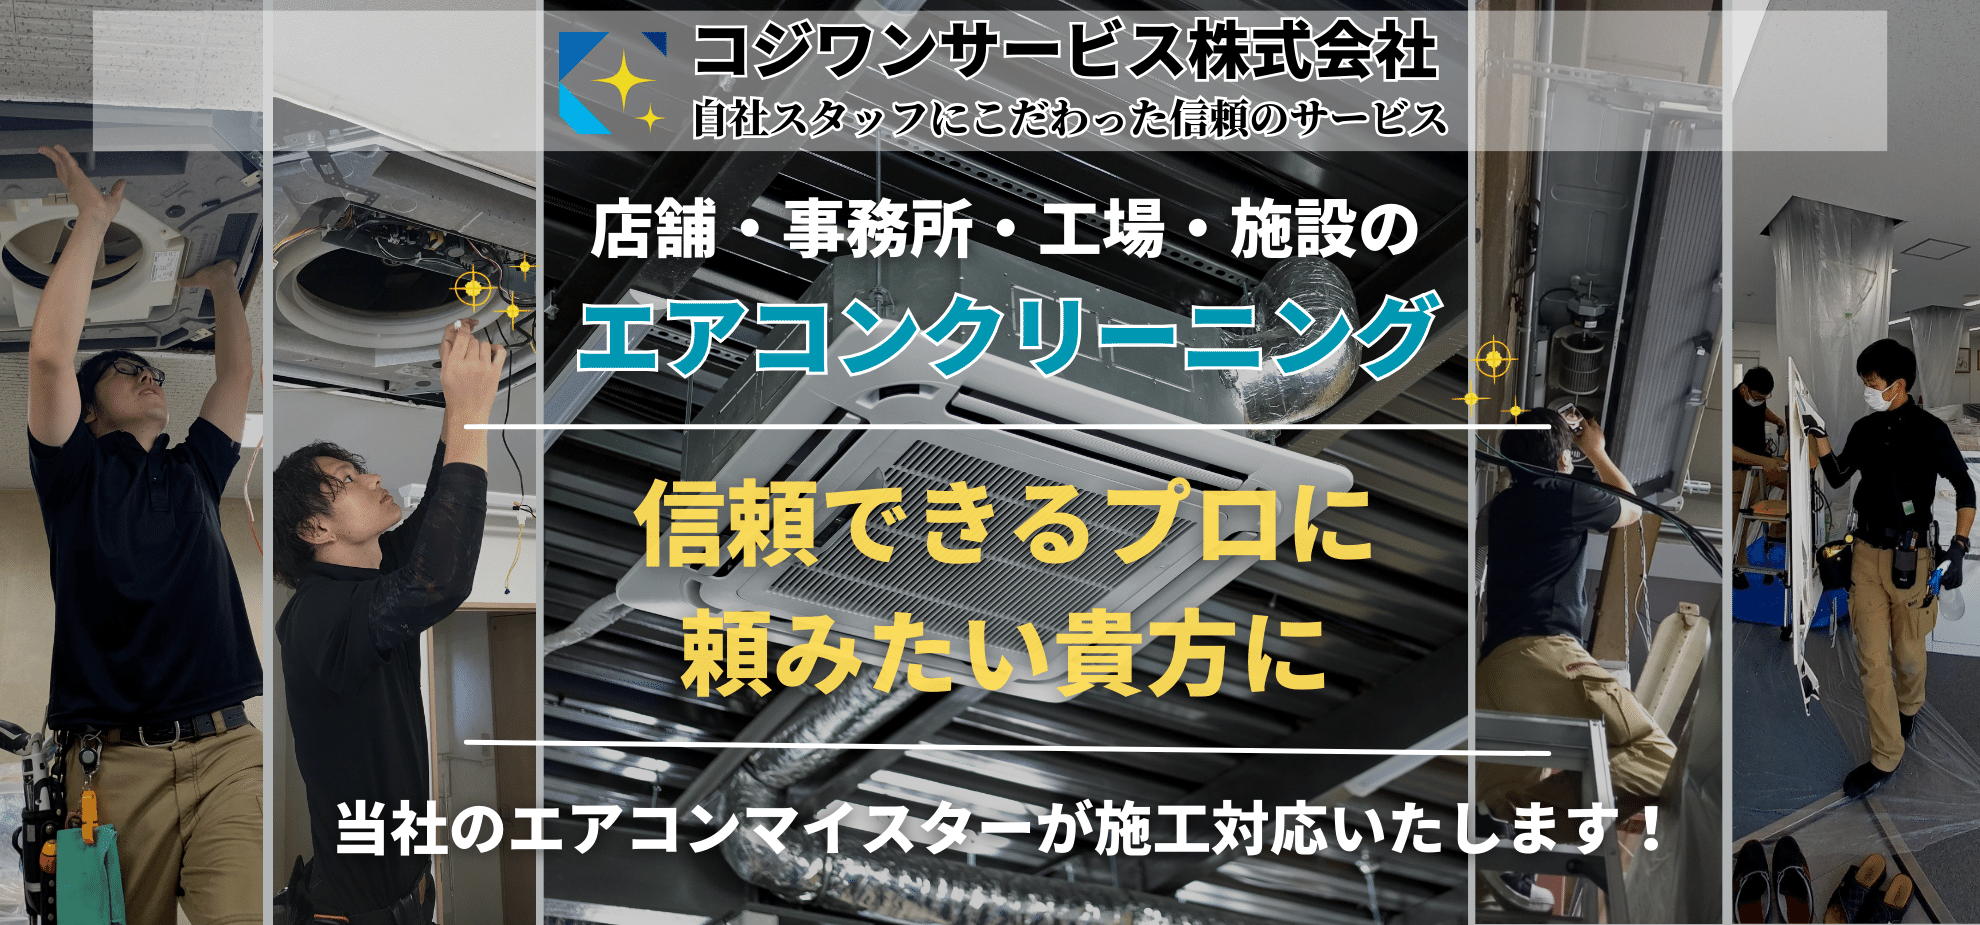 業務用エアコンアイキャッチ・新ロゴ